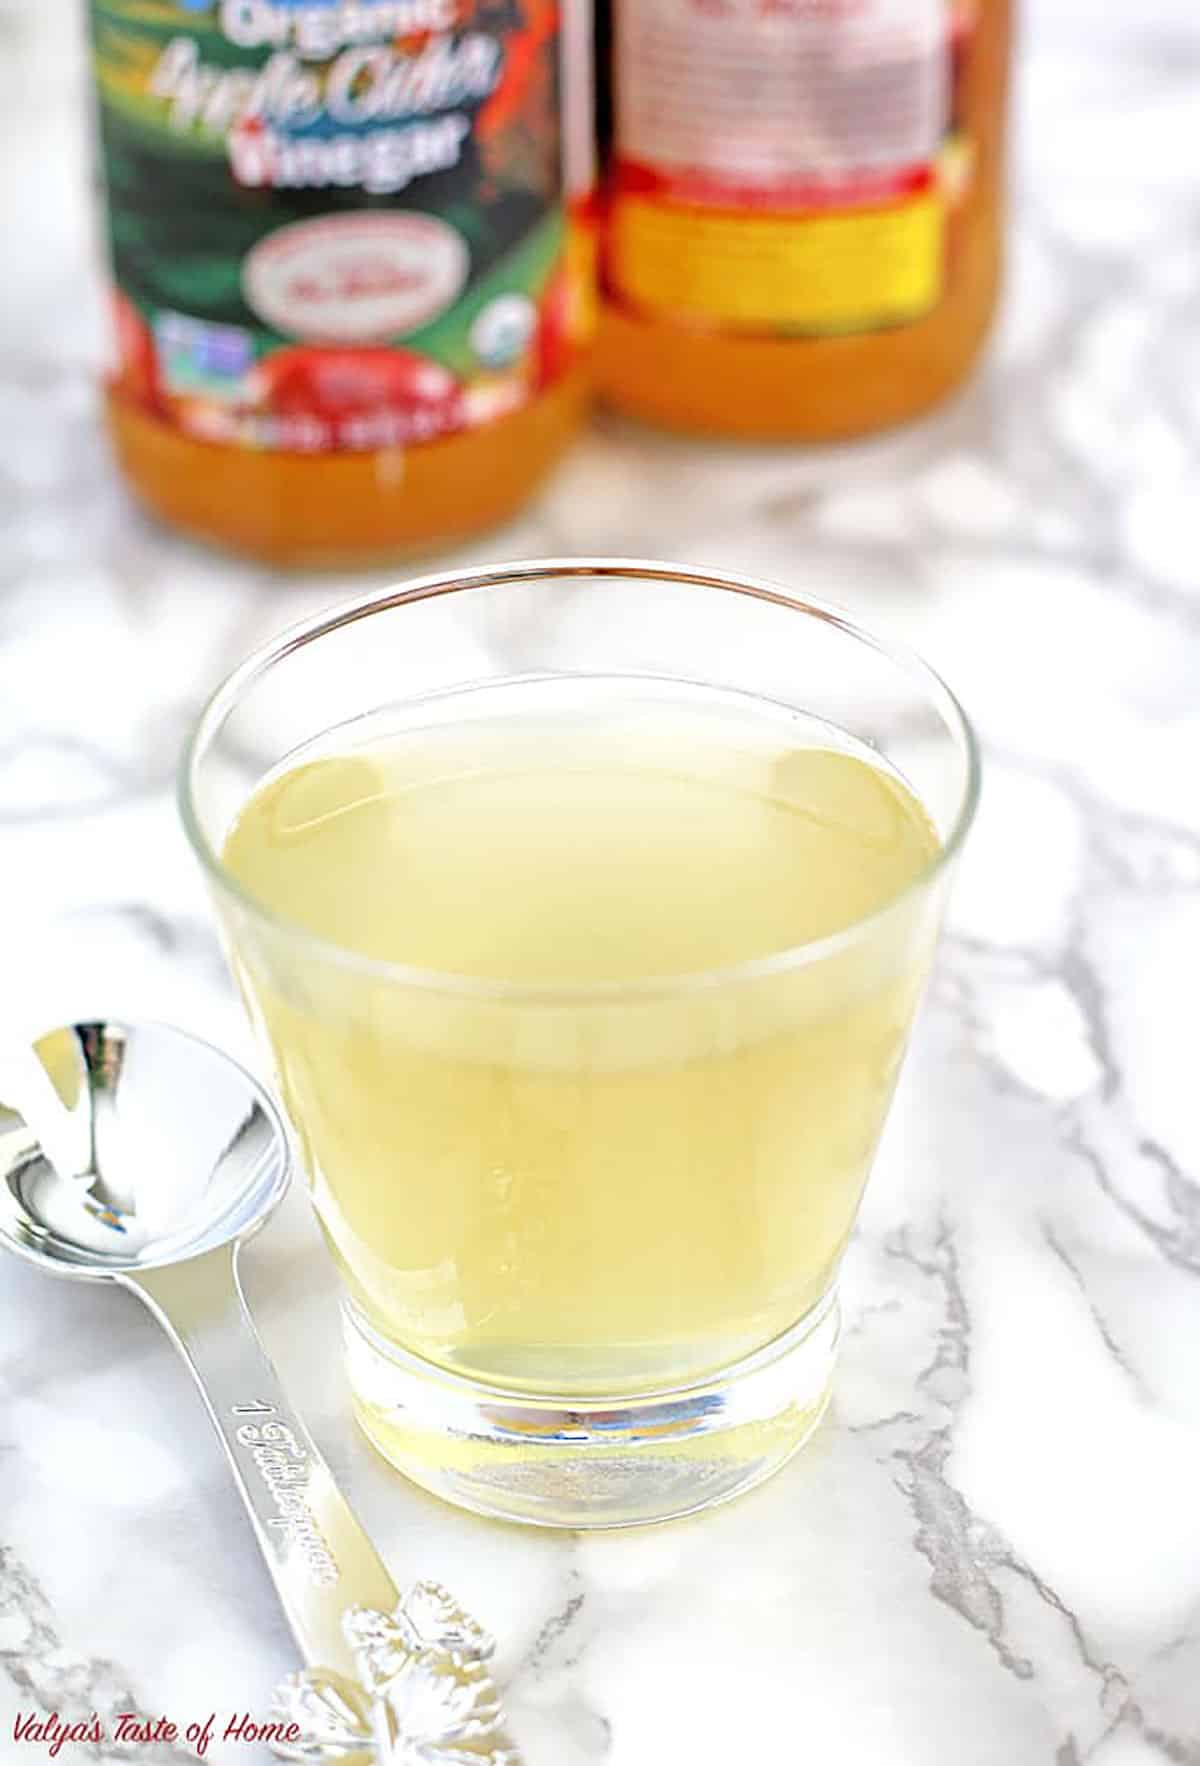 https://www.valyastasteofhome.com/wp-content/uploads/2021/04/Apple-Cider-Vinegar-Drink-Recipe-Ideal-Detox-Drink.jpg